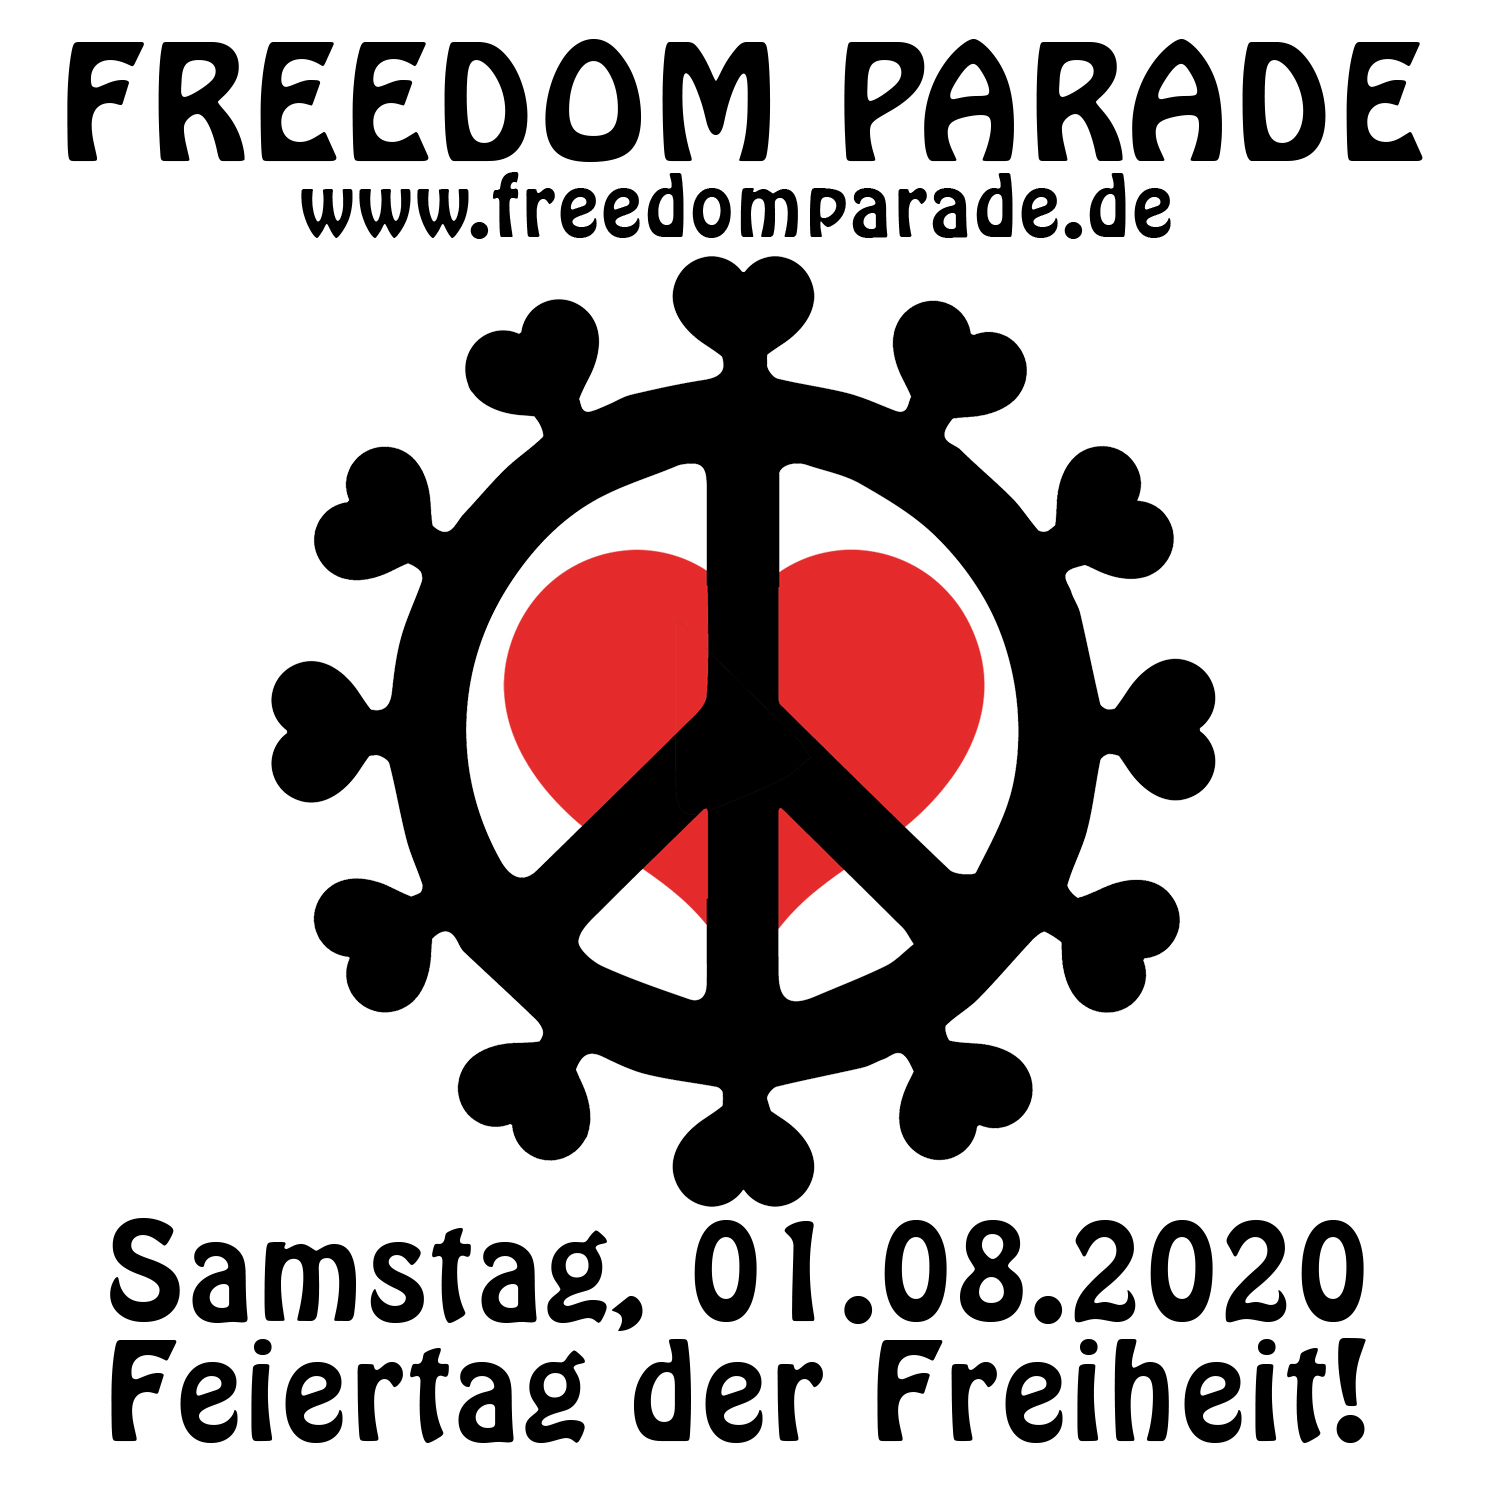 Freedomparade.de